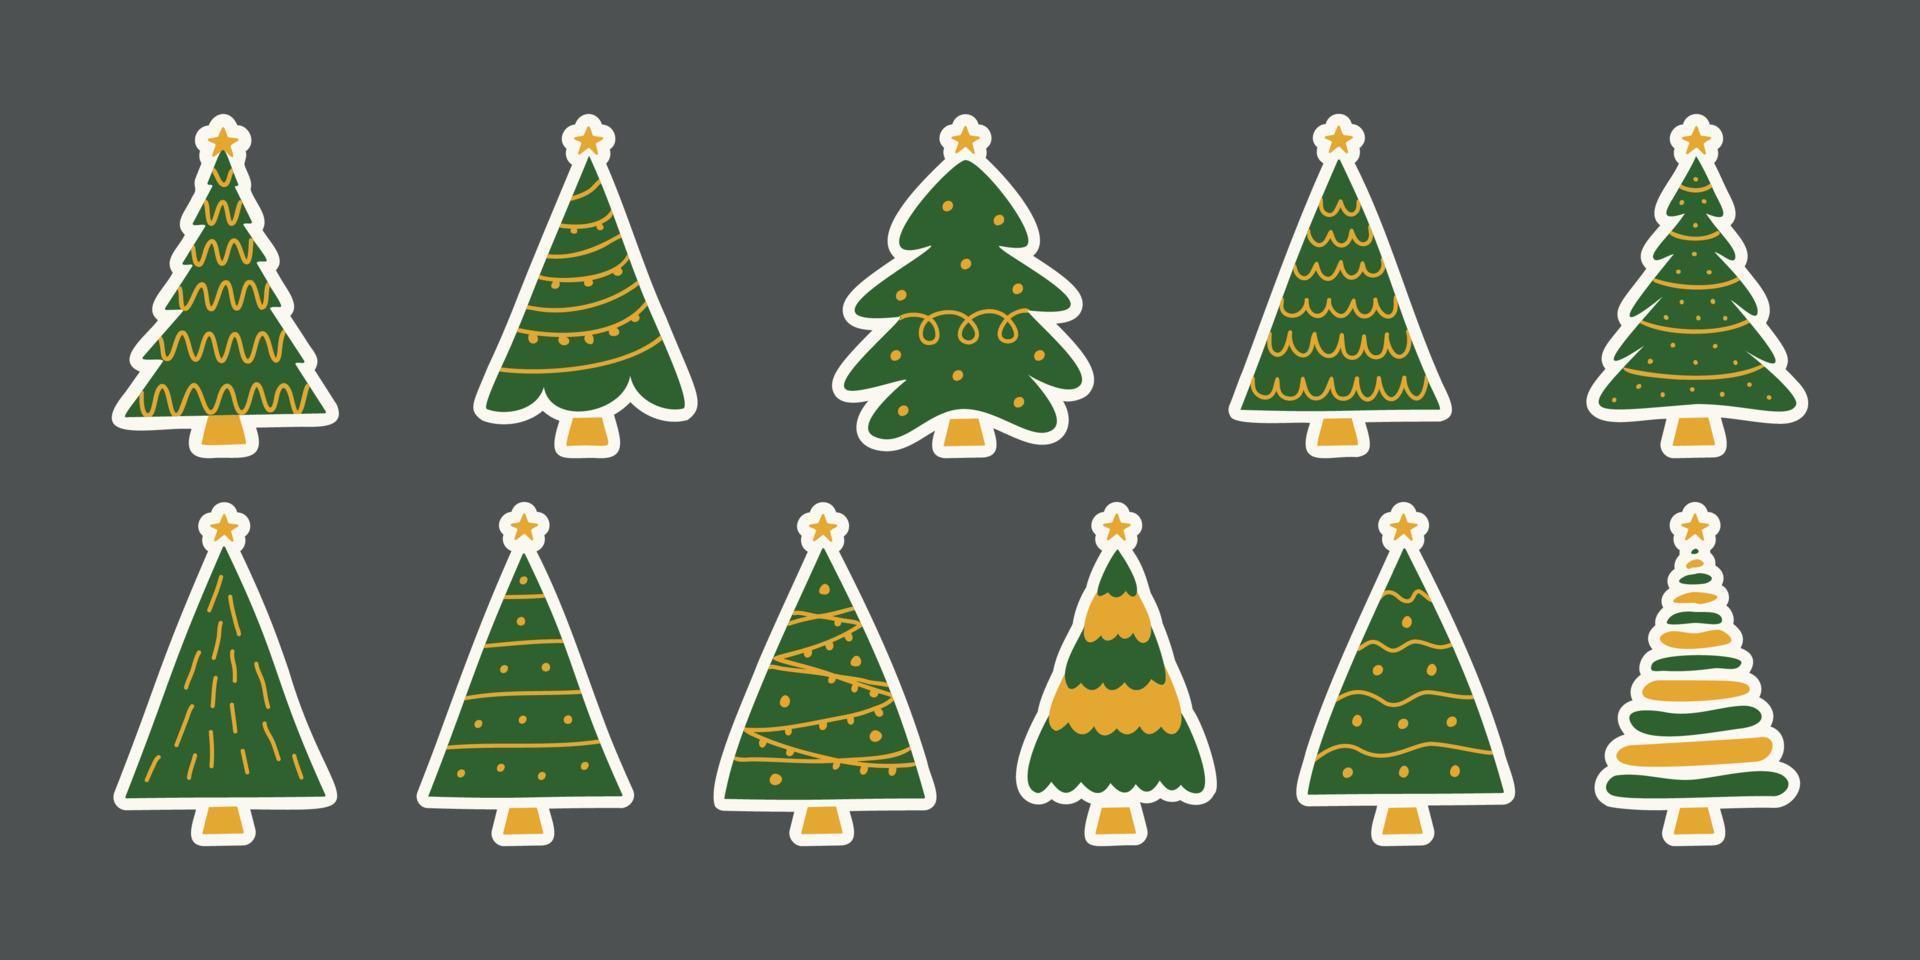 Vektor flache handgezeichnete Reihe von Weihnachtsaufklebern.